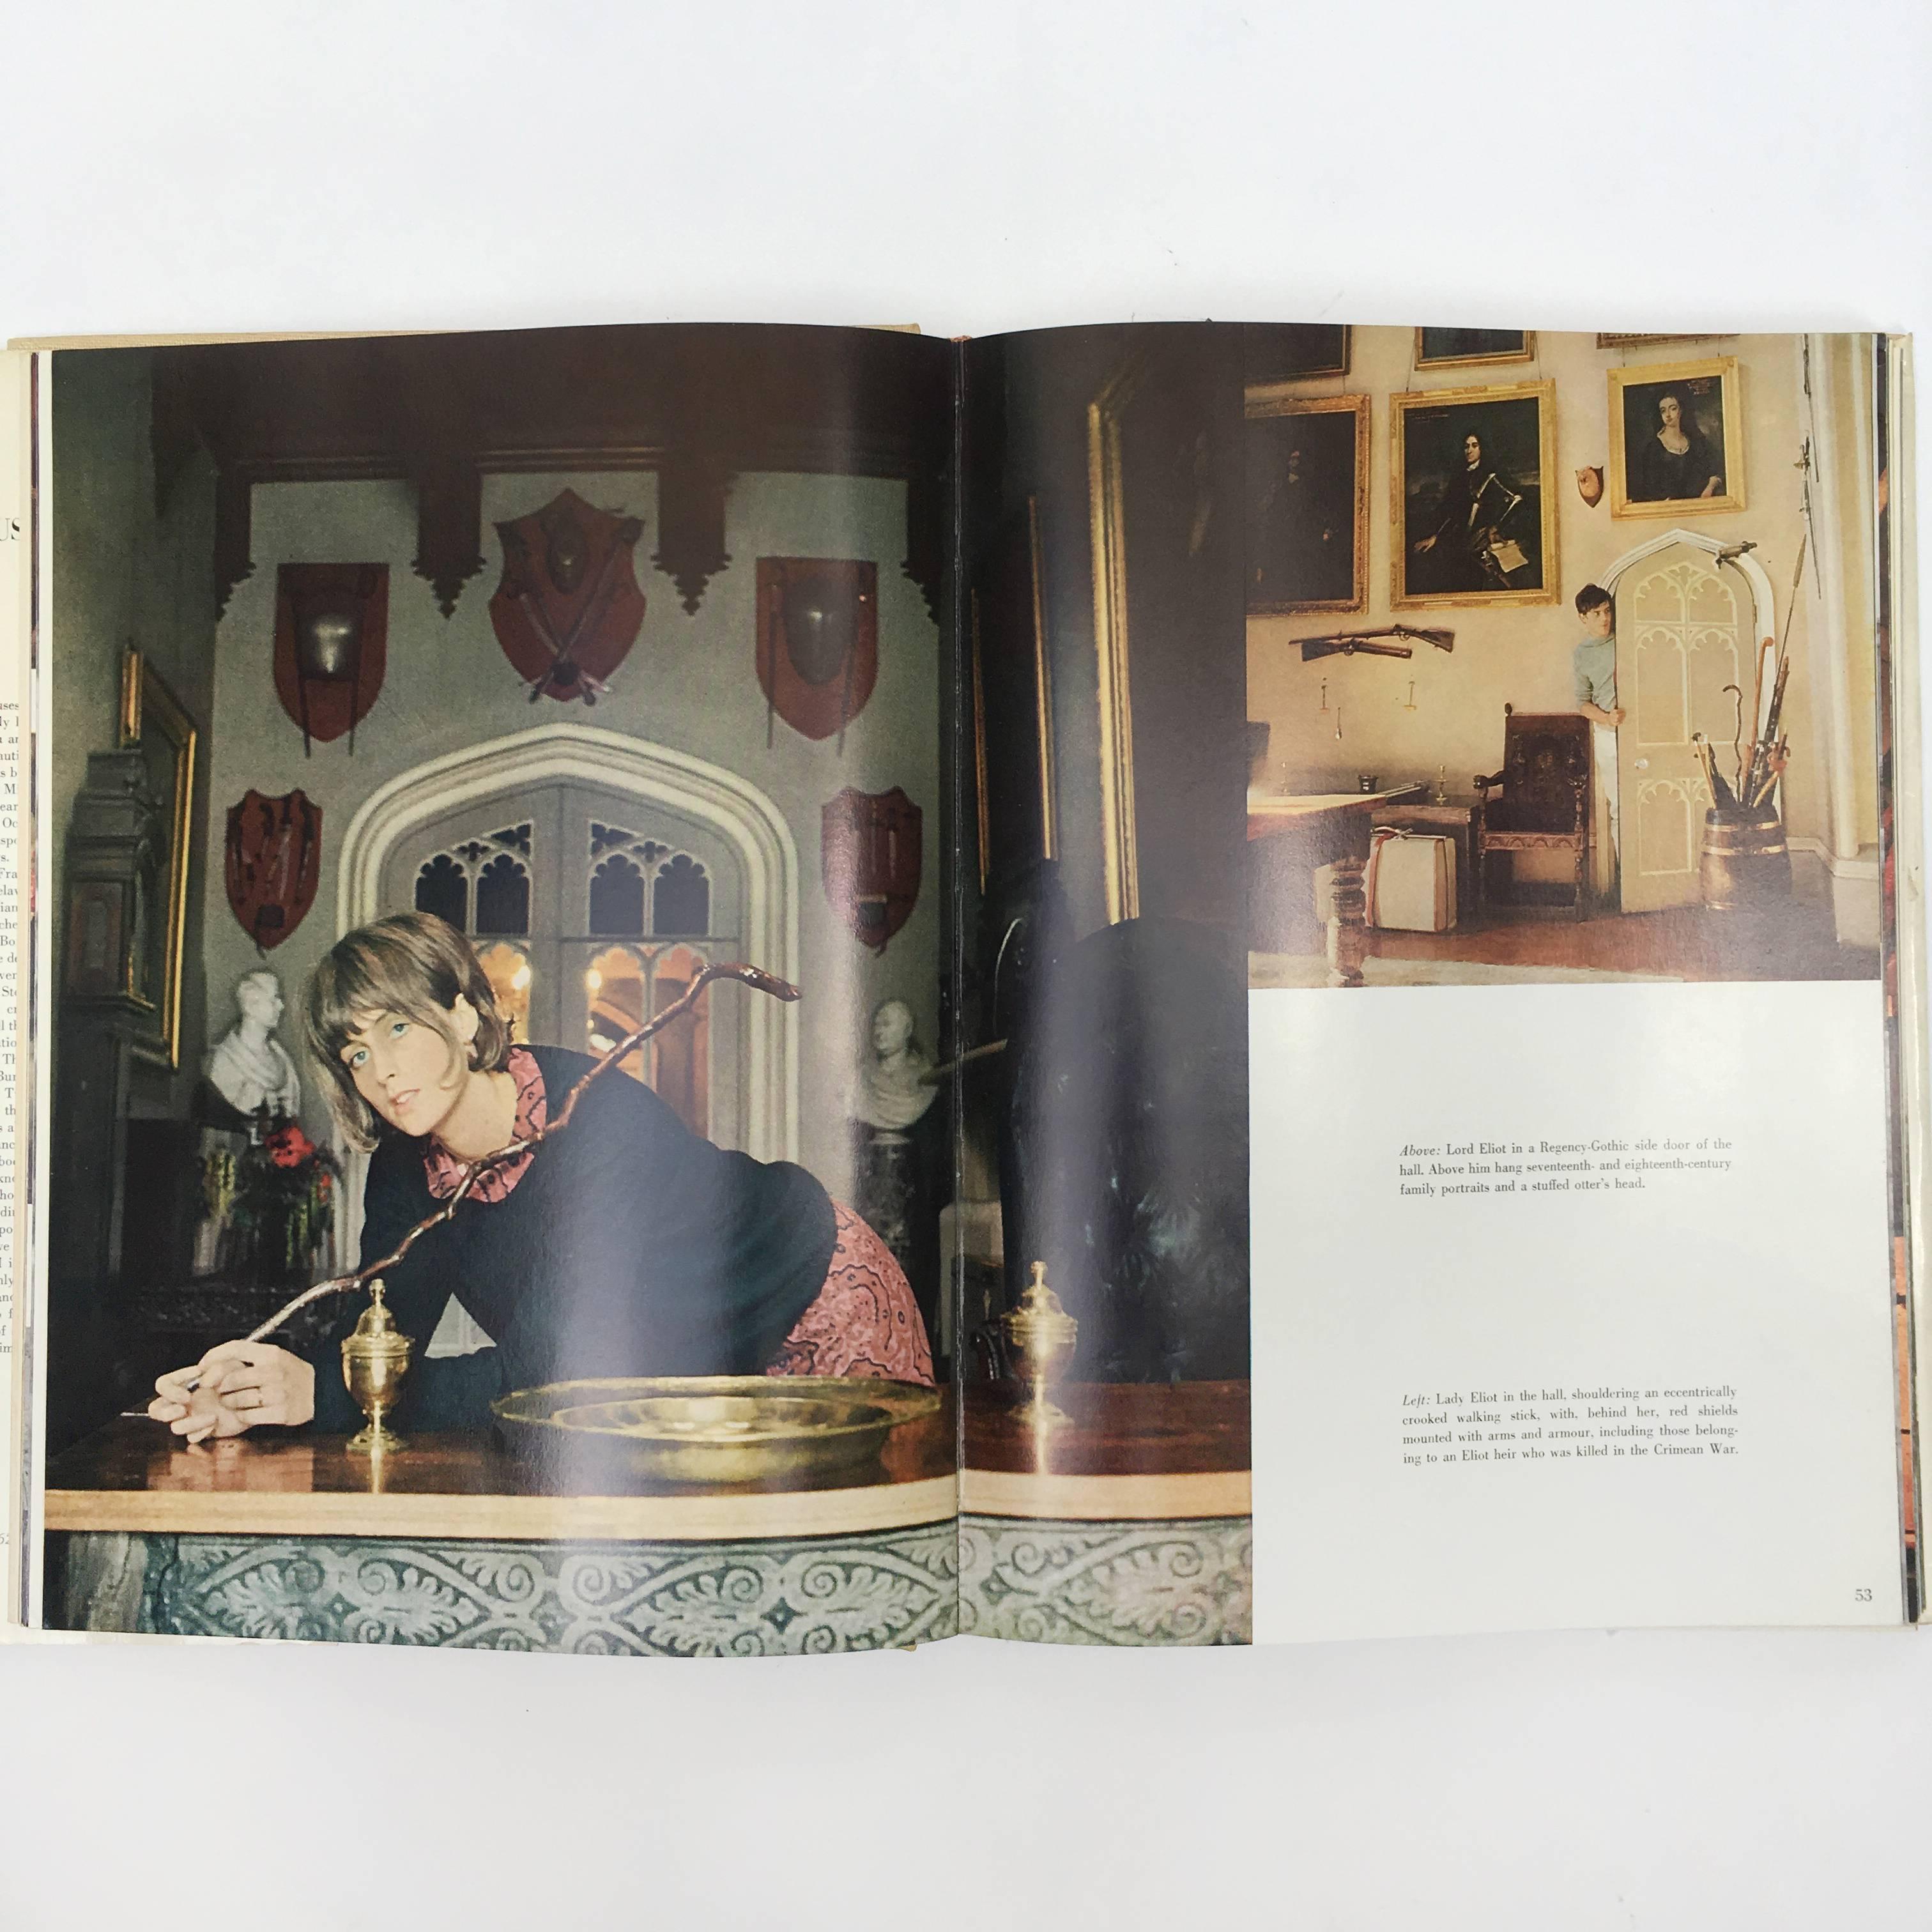 Première édition, publiée par la Viking Press, New York, en 1968.

Une collection de photos d'intérieur et de portraits mettant en scène les maisons opulentes et les gens fortunés des années 1960, photographiés par le célèbre photographe de mode